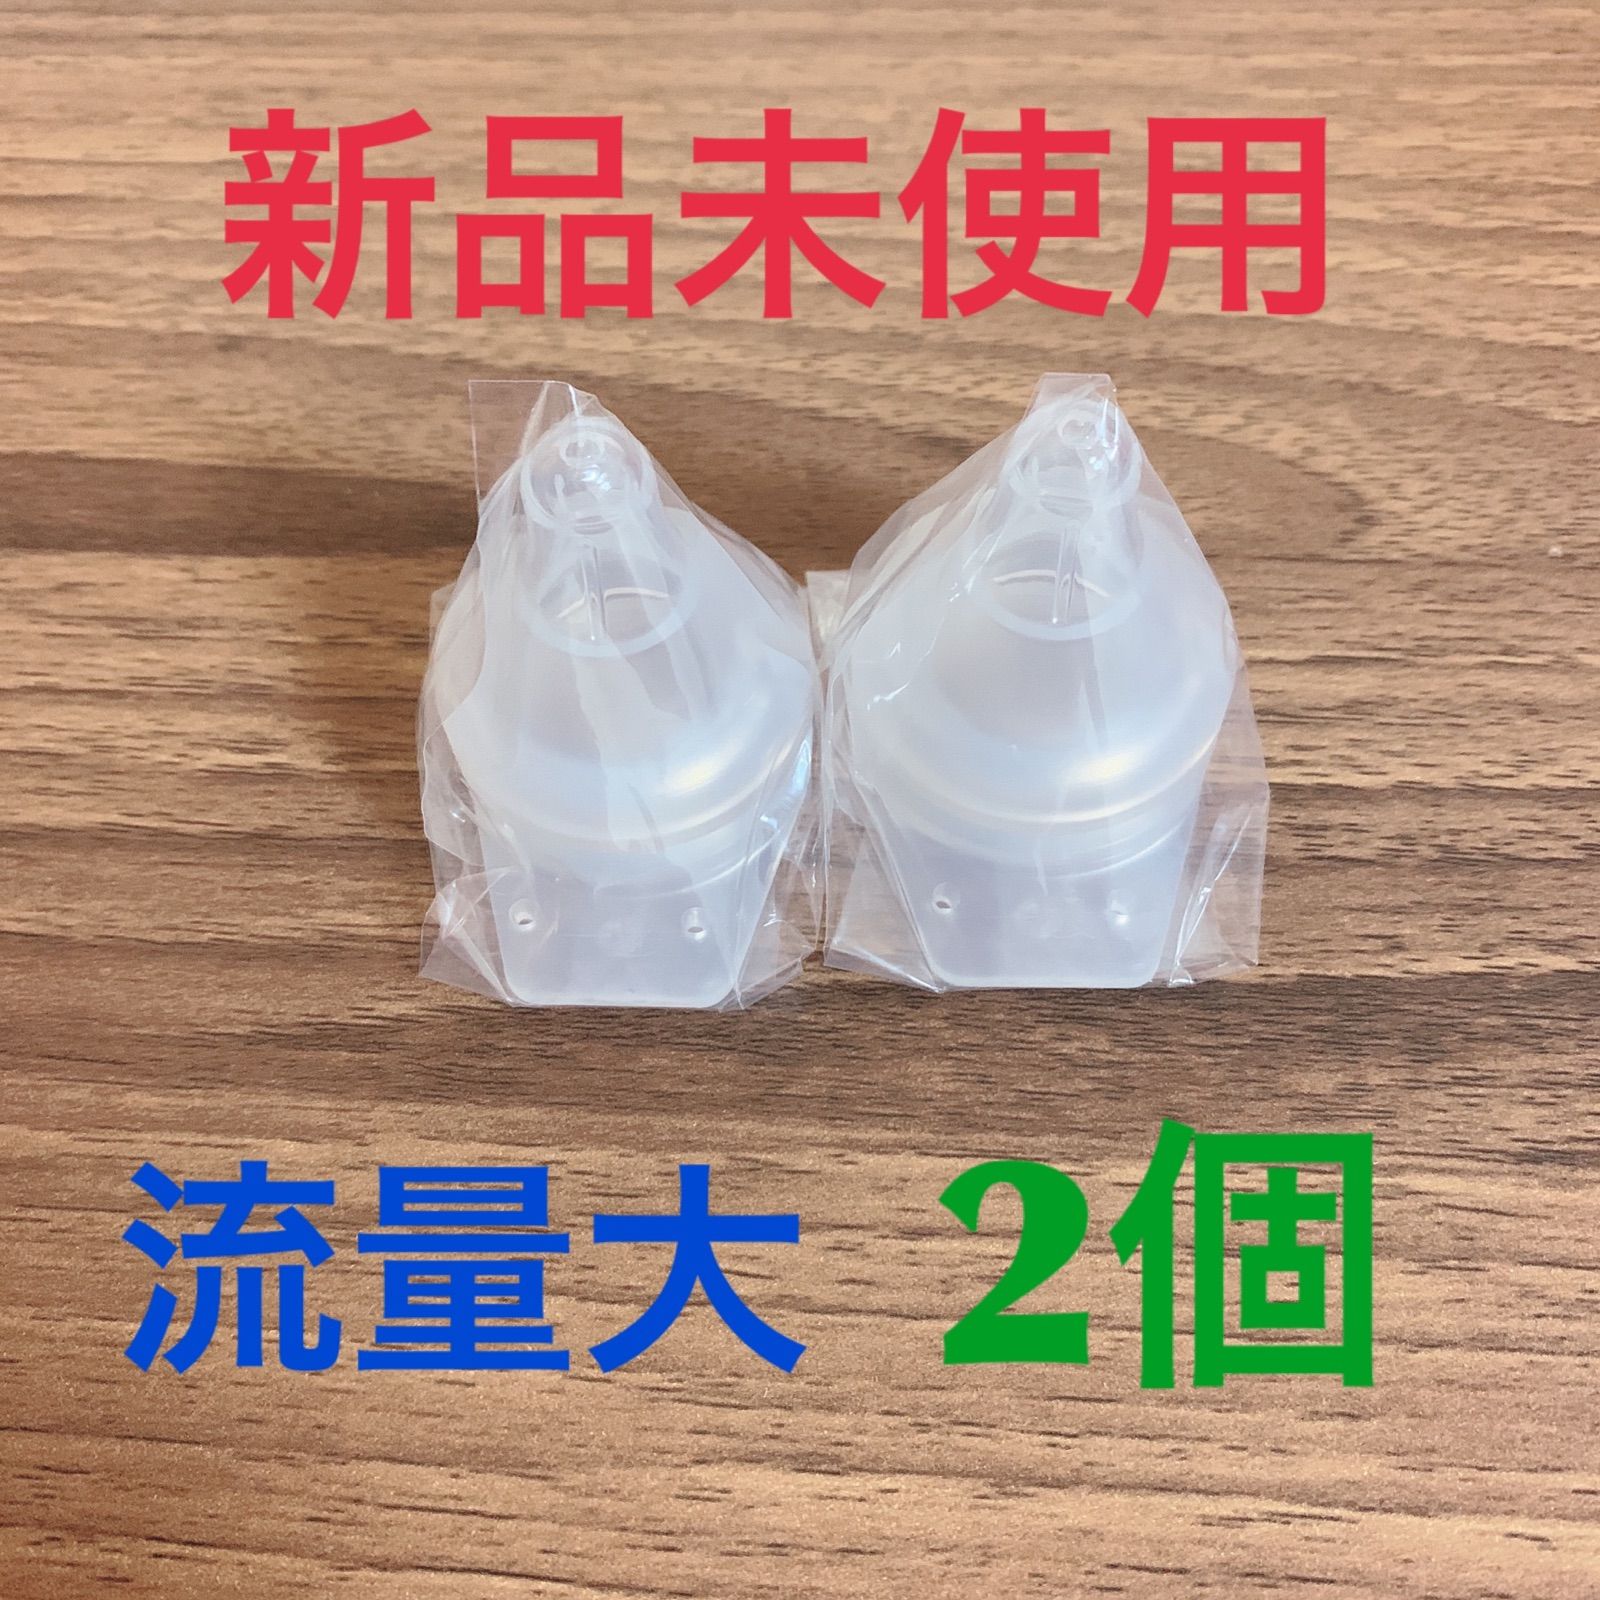 旧品 廃盤品 母乳実感直付け哺乳瓶 乳首 SS 流量大 2個 - メルカリ